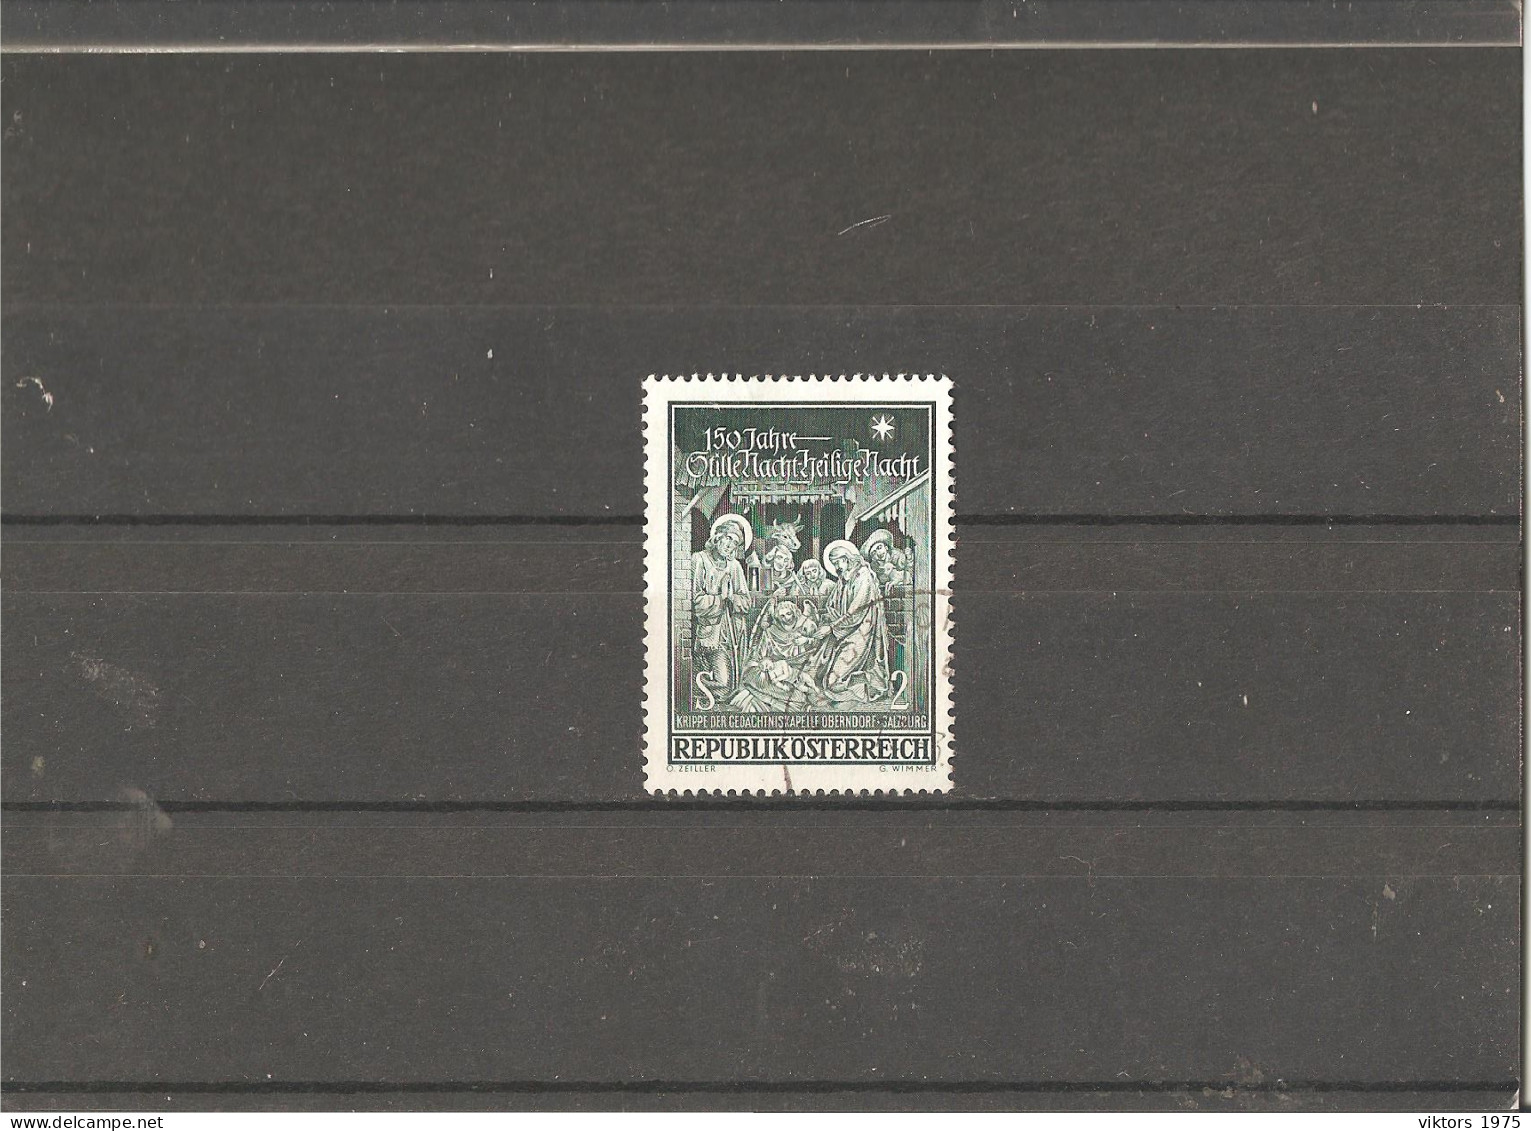 Used Stamp Nr.1276 In MICHEL Catalog - Usati